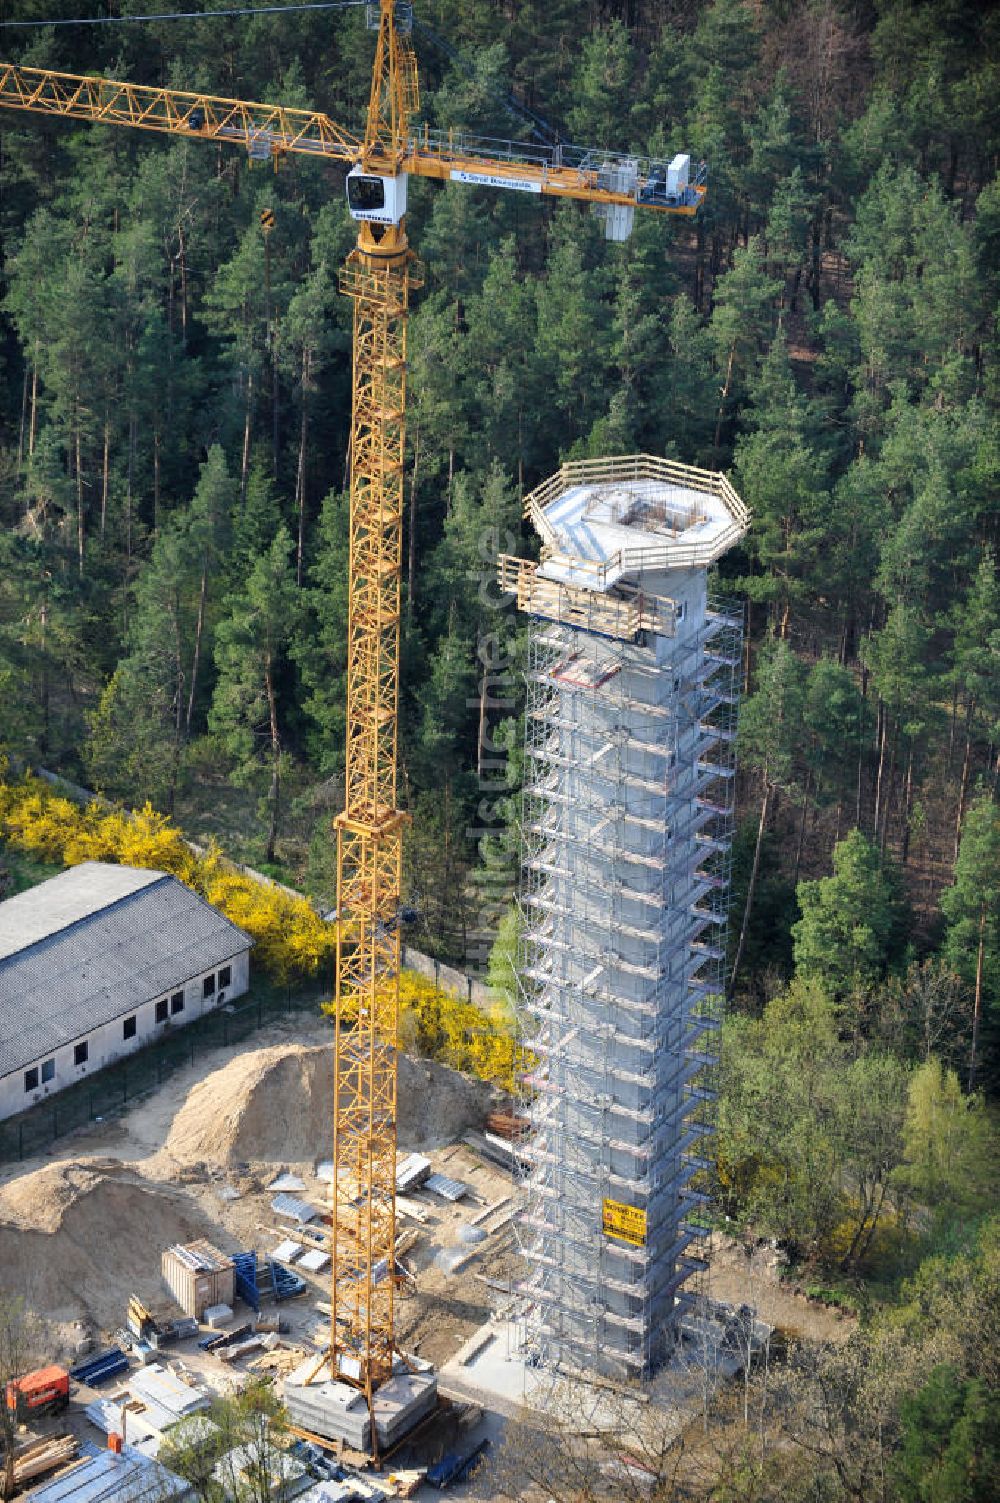 PRÖTZEL OT Heidekrug von oben - Baustelle zur Errichtung eines Wetterradarturmes des DWD auf dem Gelände der ehemaligen Kaserne Heidekrug